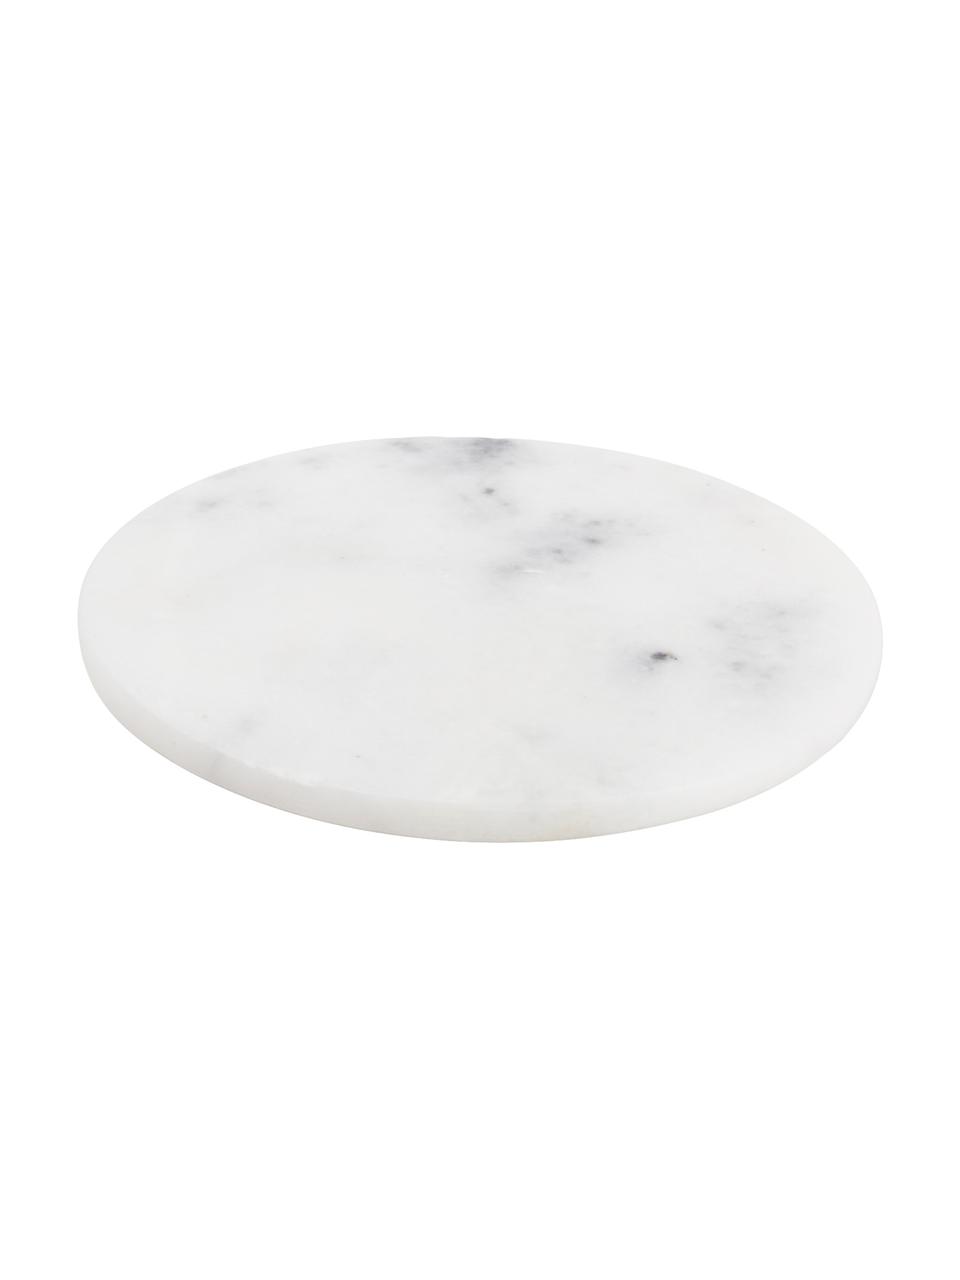 Sous-verre marbre Aster, 4 pièces, Blanc, marbré